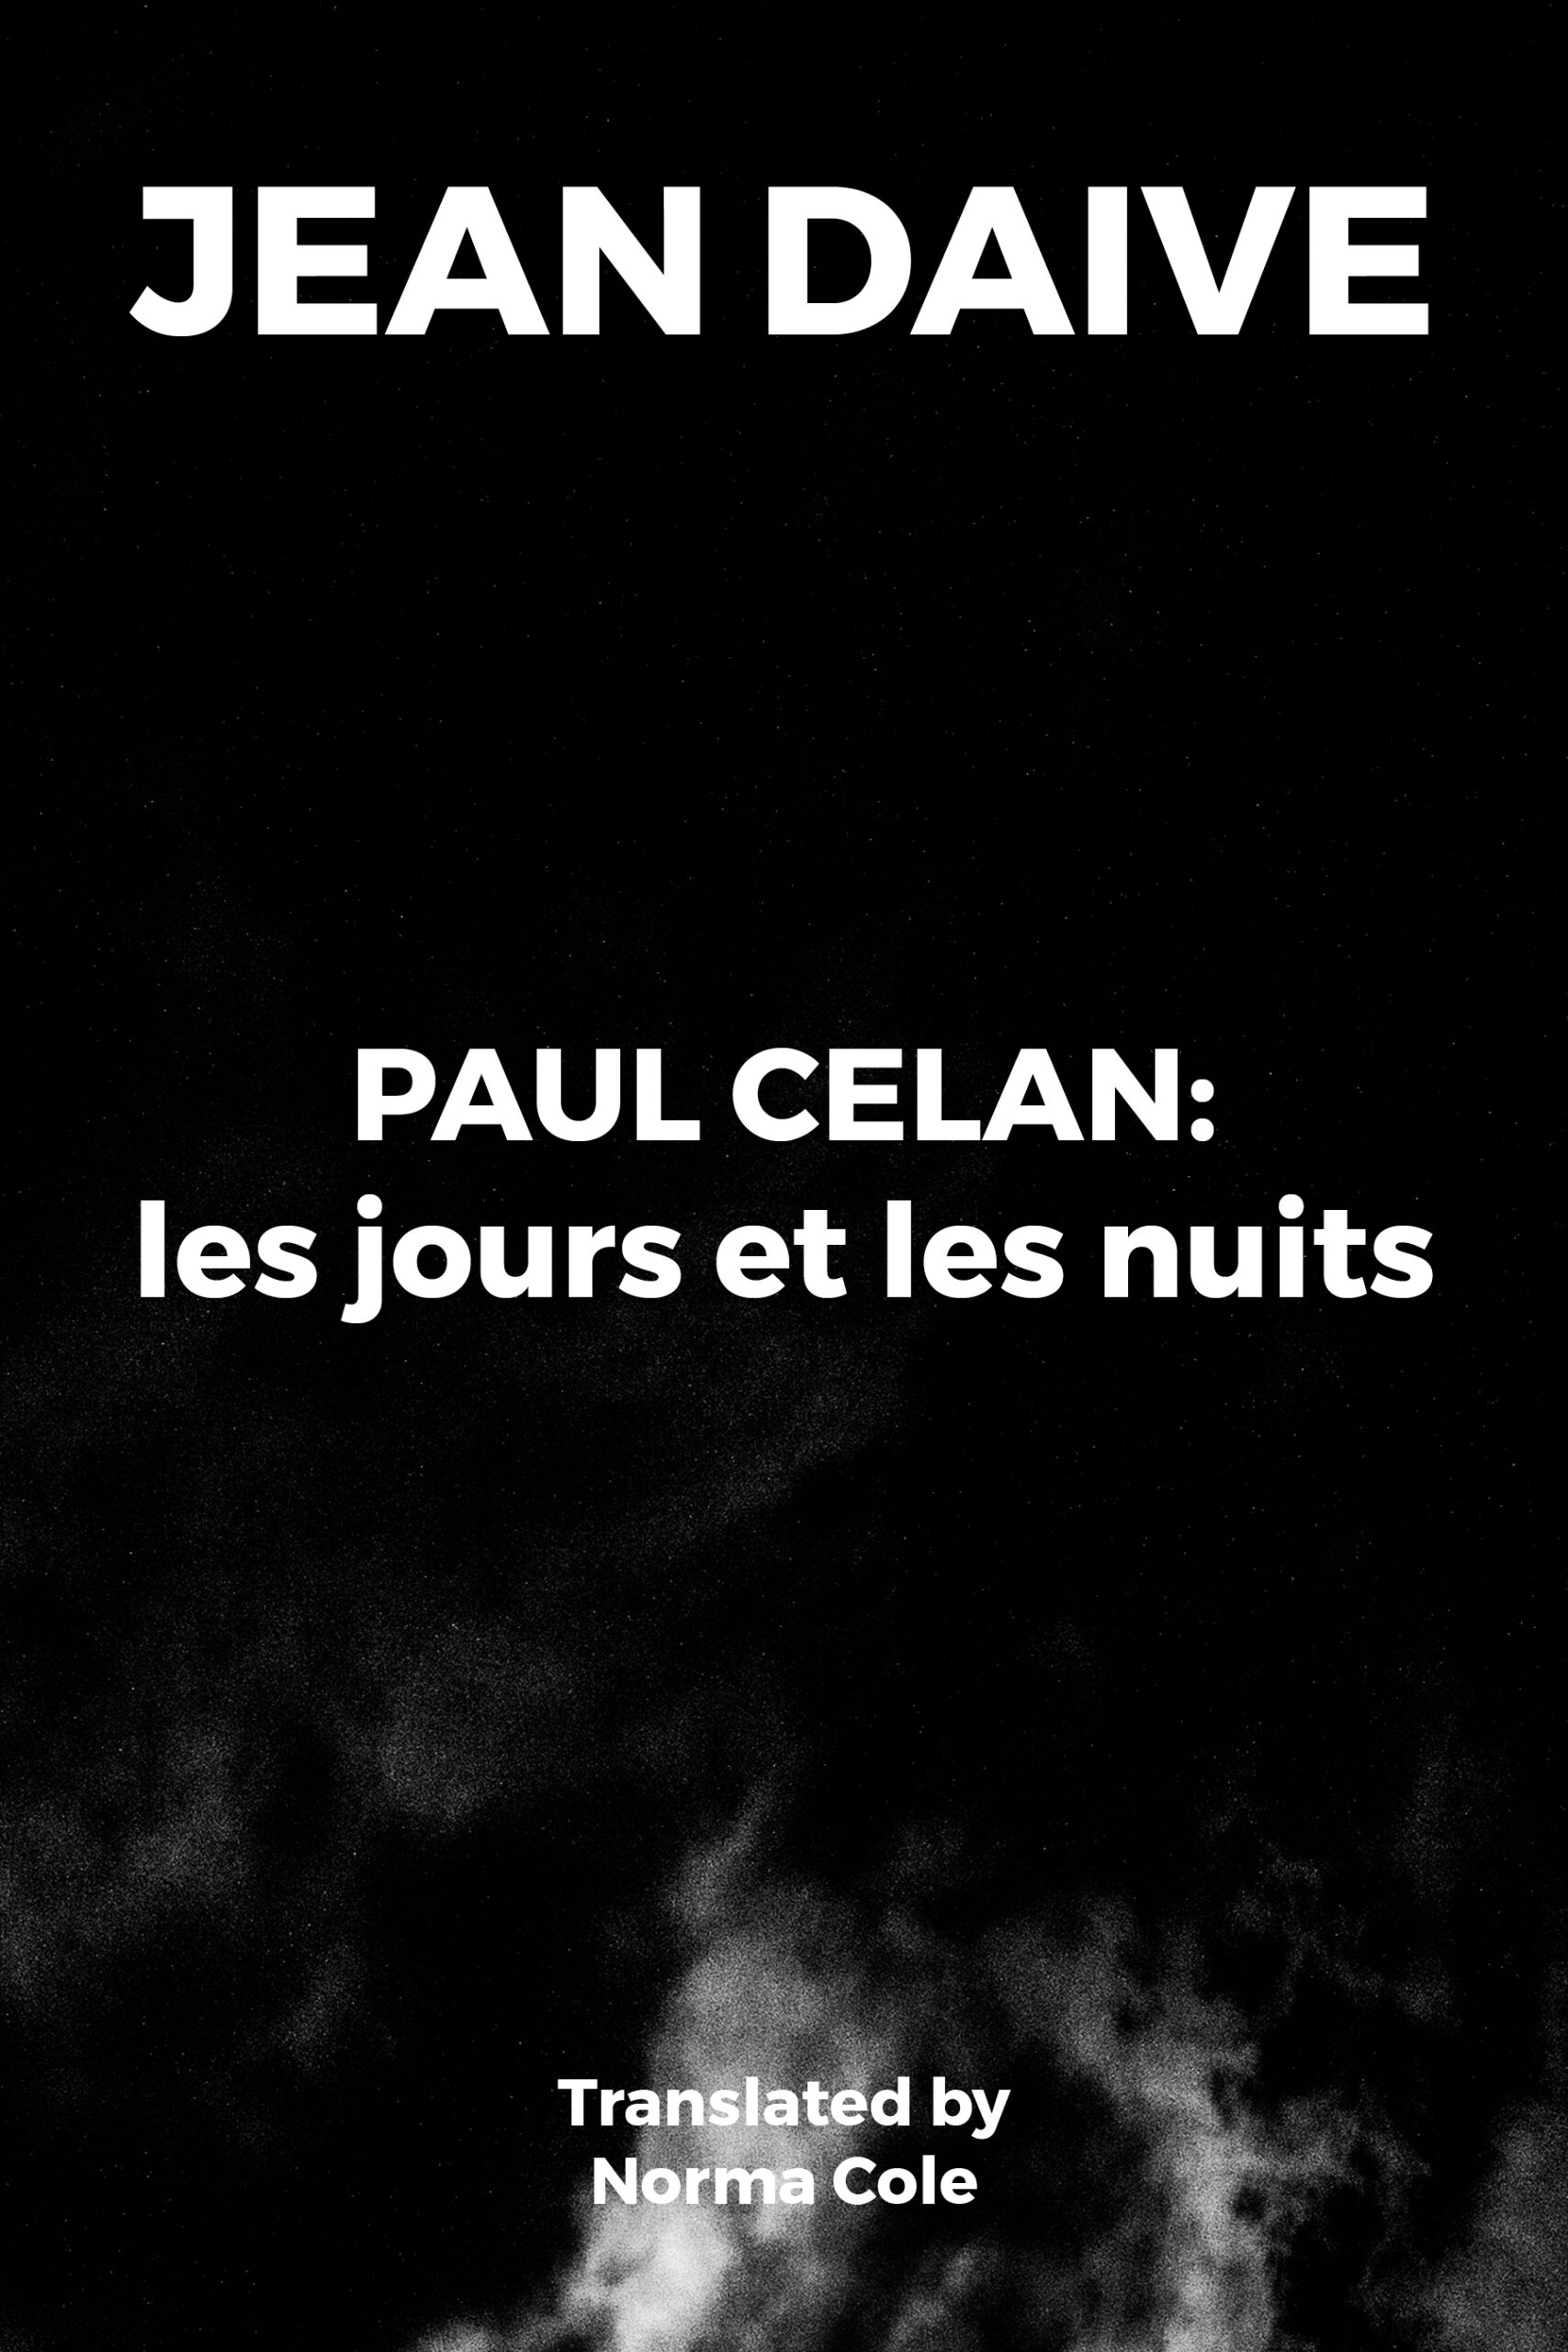 Paul Celan — les jours et les nuits